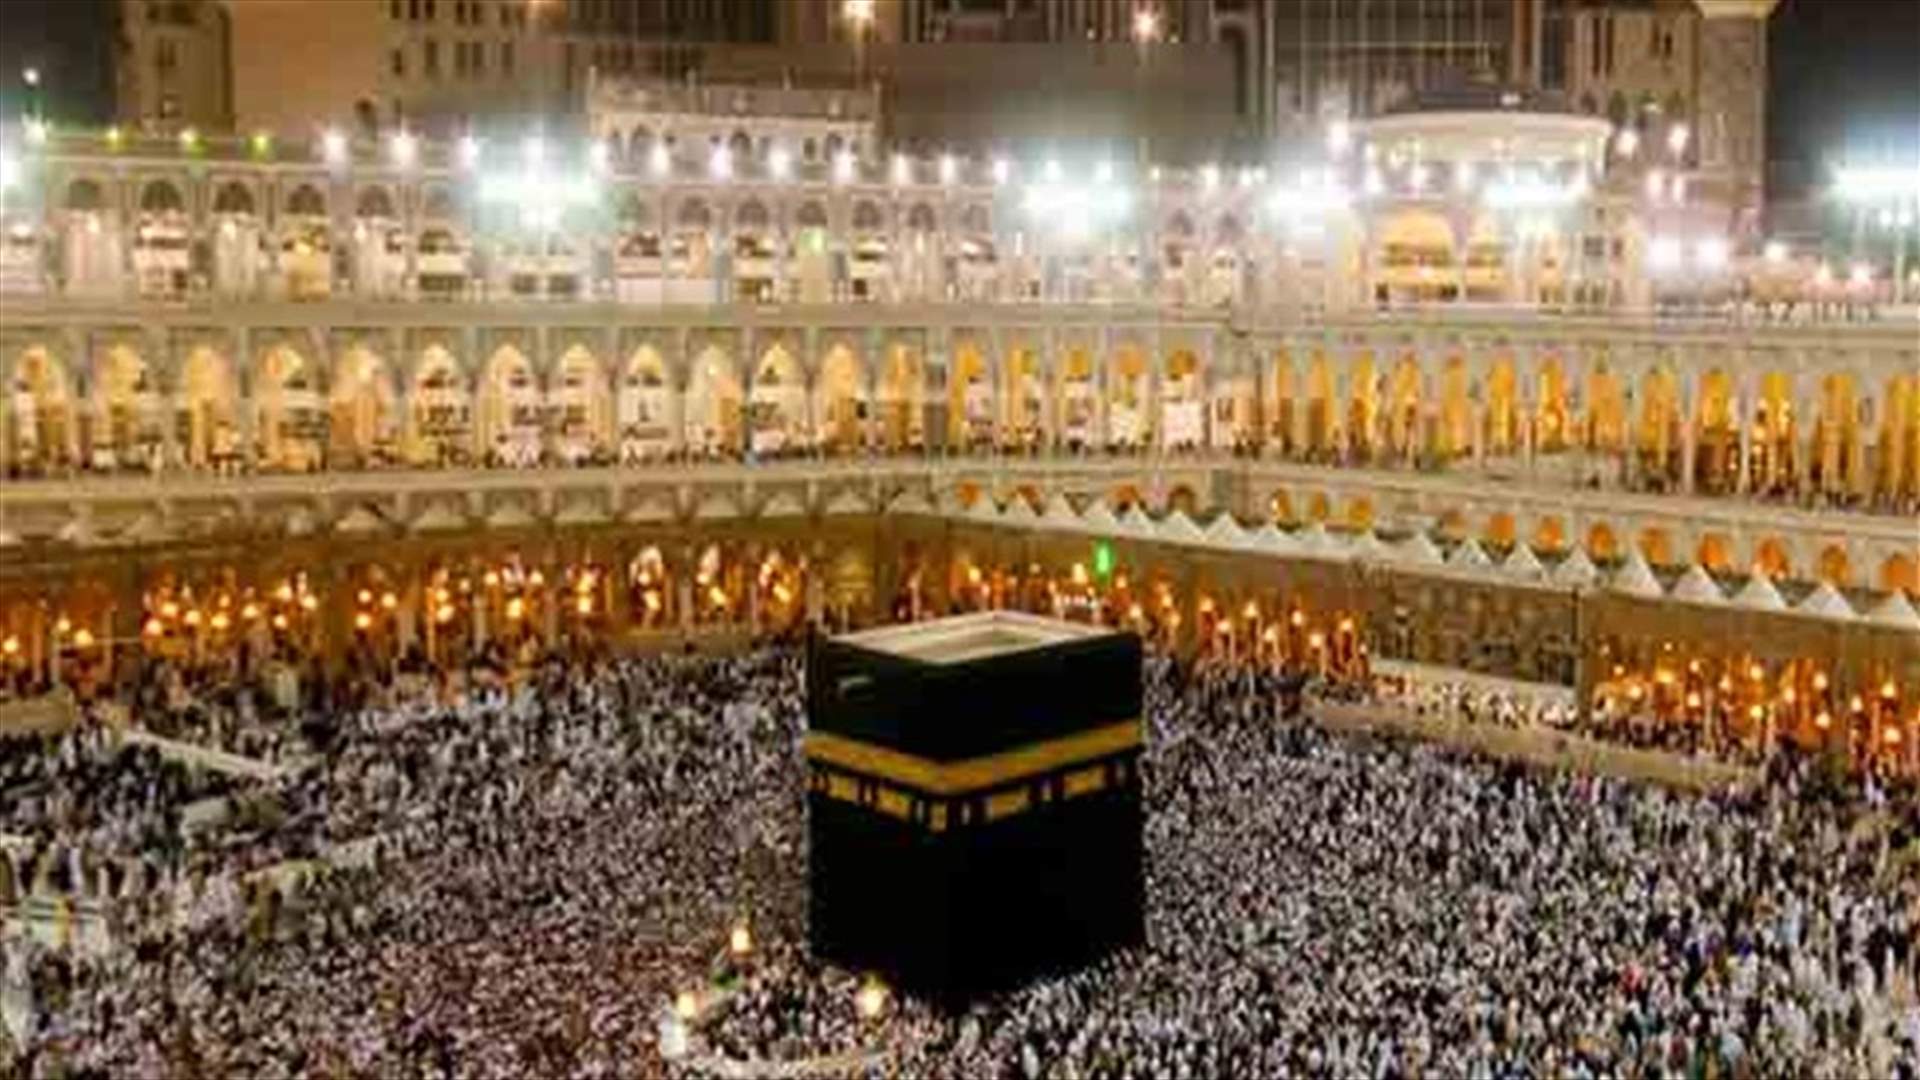 Iran says its pilgrims will not attend haj in Saudi Arabia